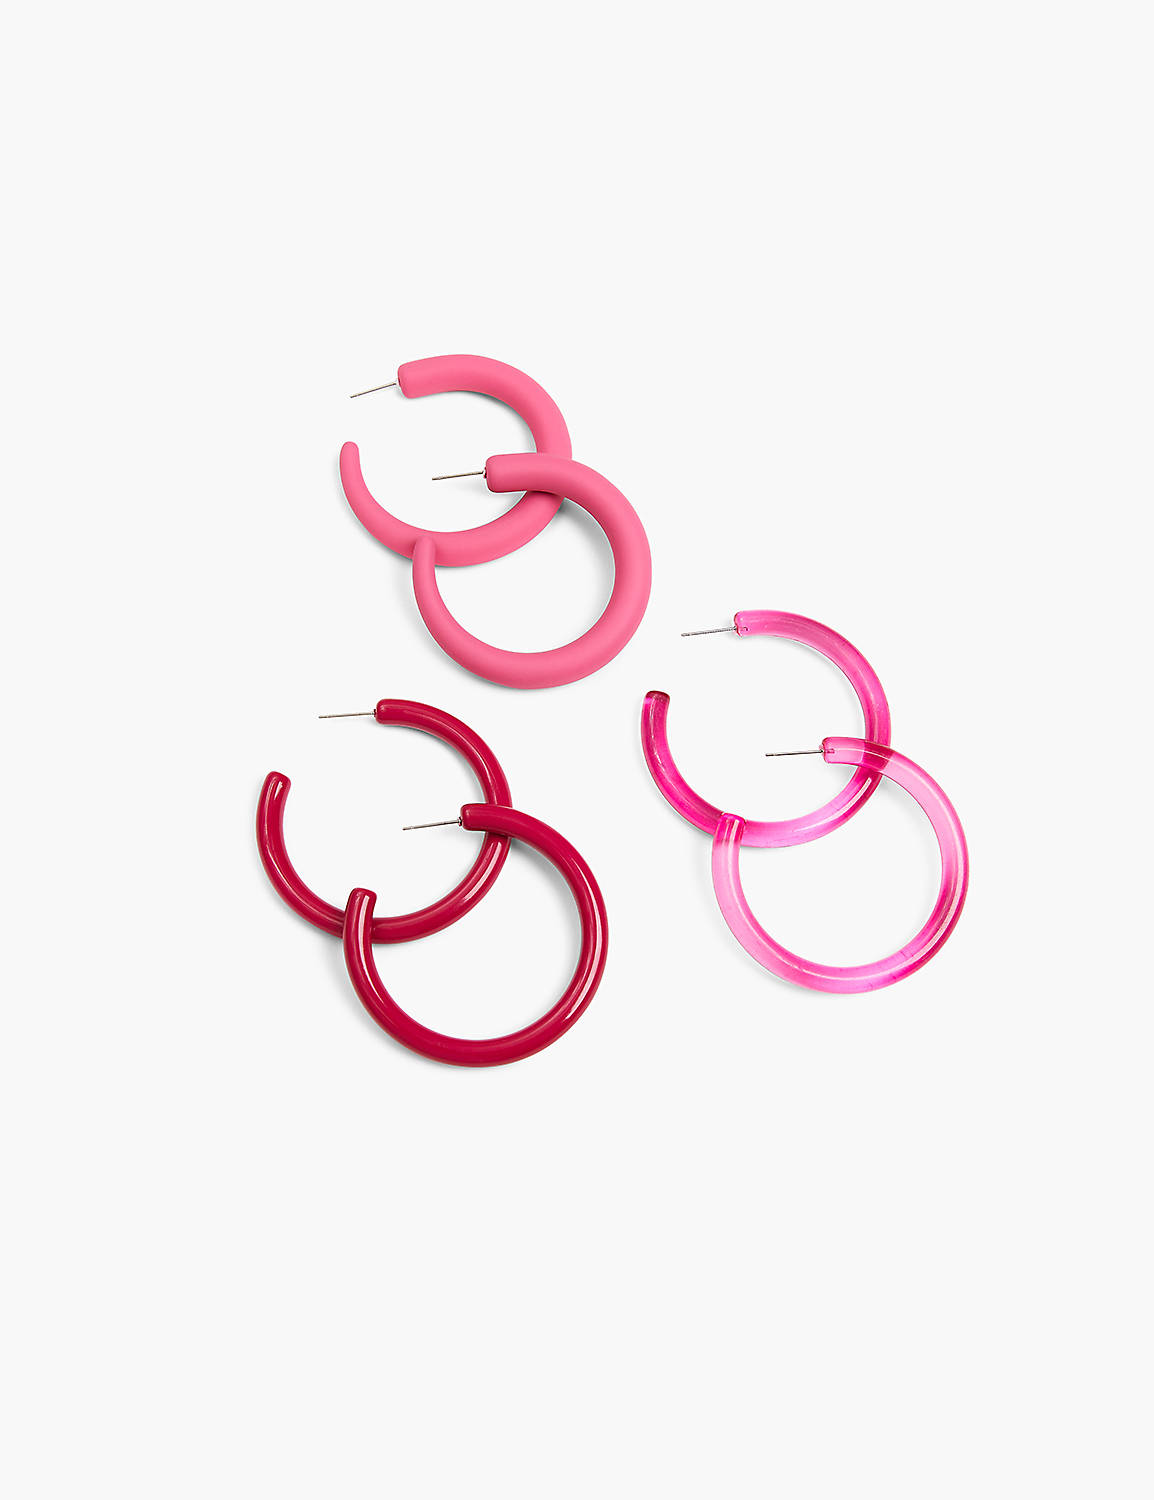 Hot Pink Hoop Earrings - 3 Pack Product Image 1